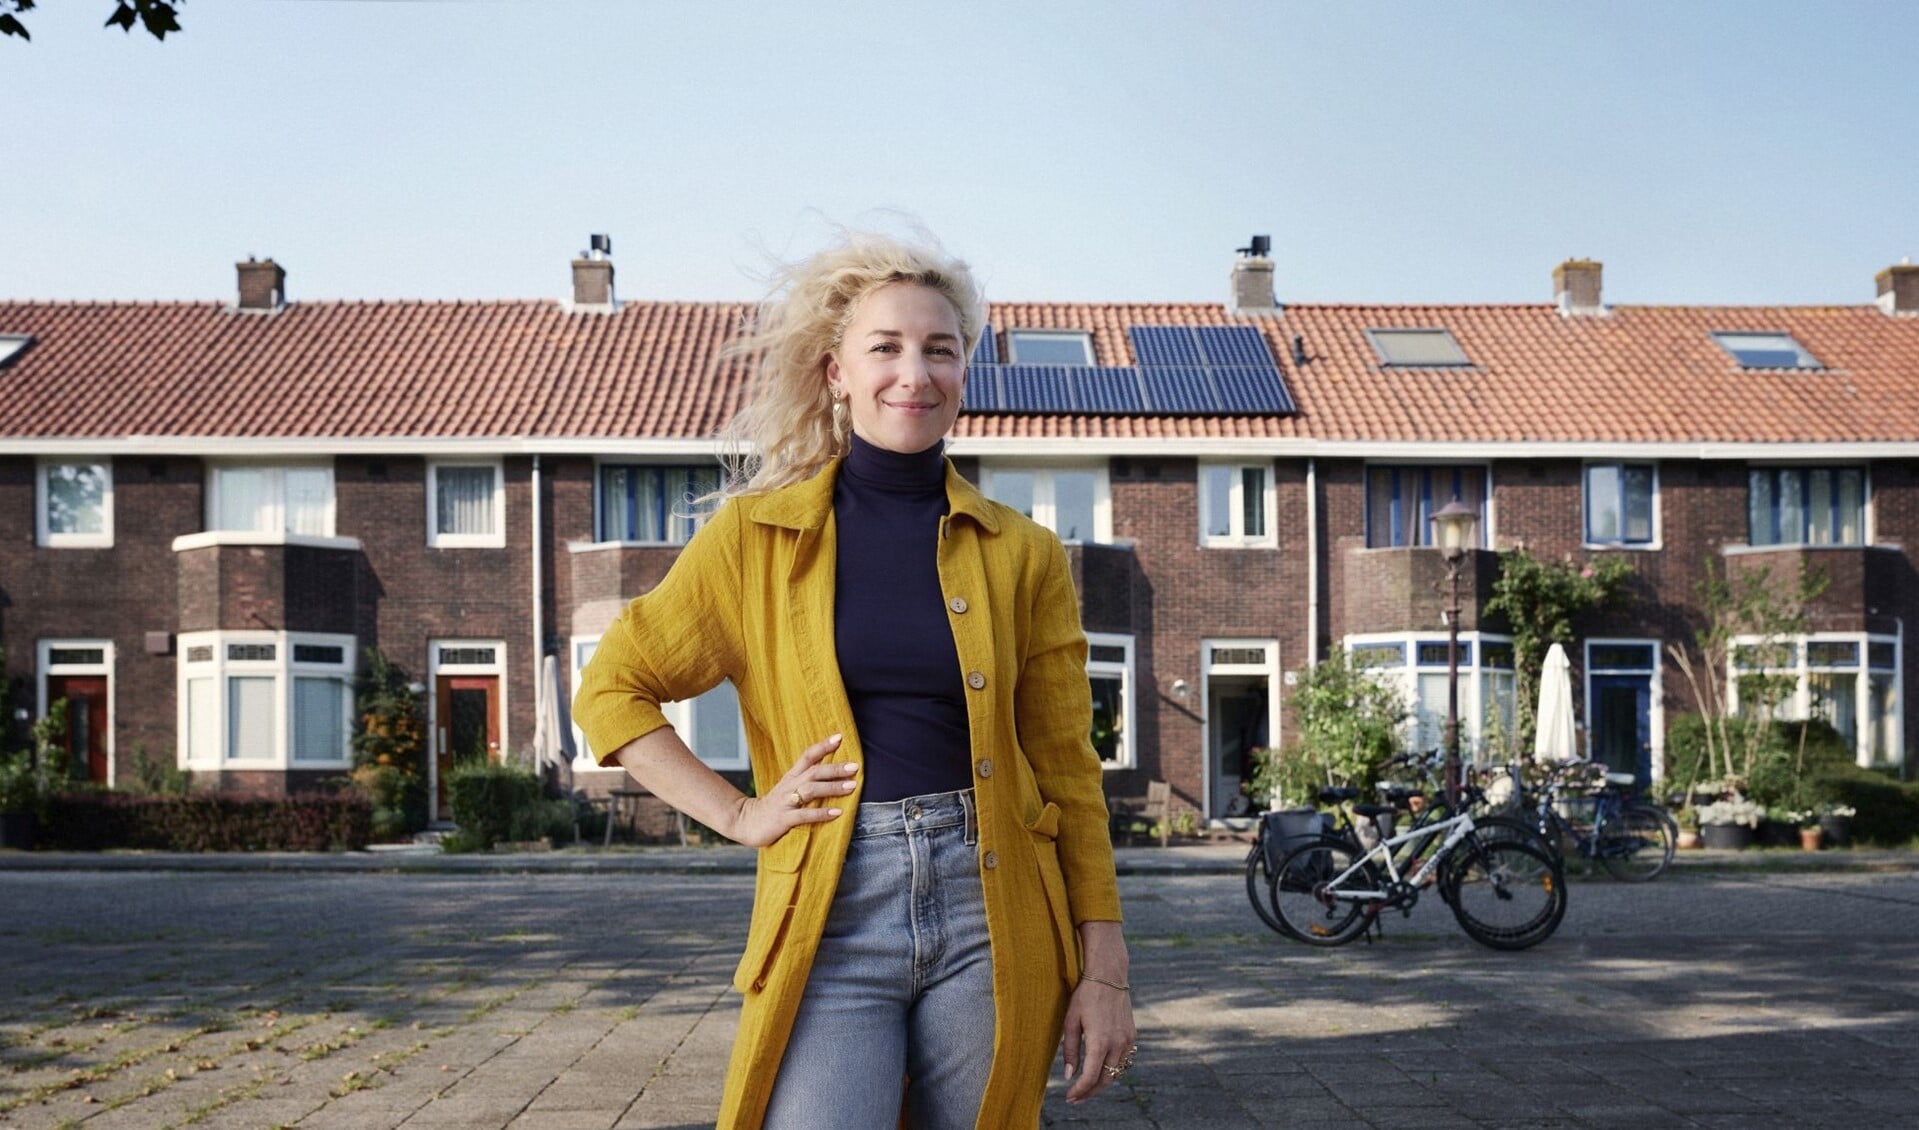 Annemieke doet ook een gooi naar de titel 'klimaatburgemeester' door zonnepanelen op haar dak te plaatsen. 